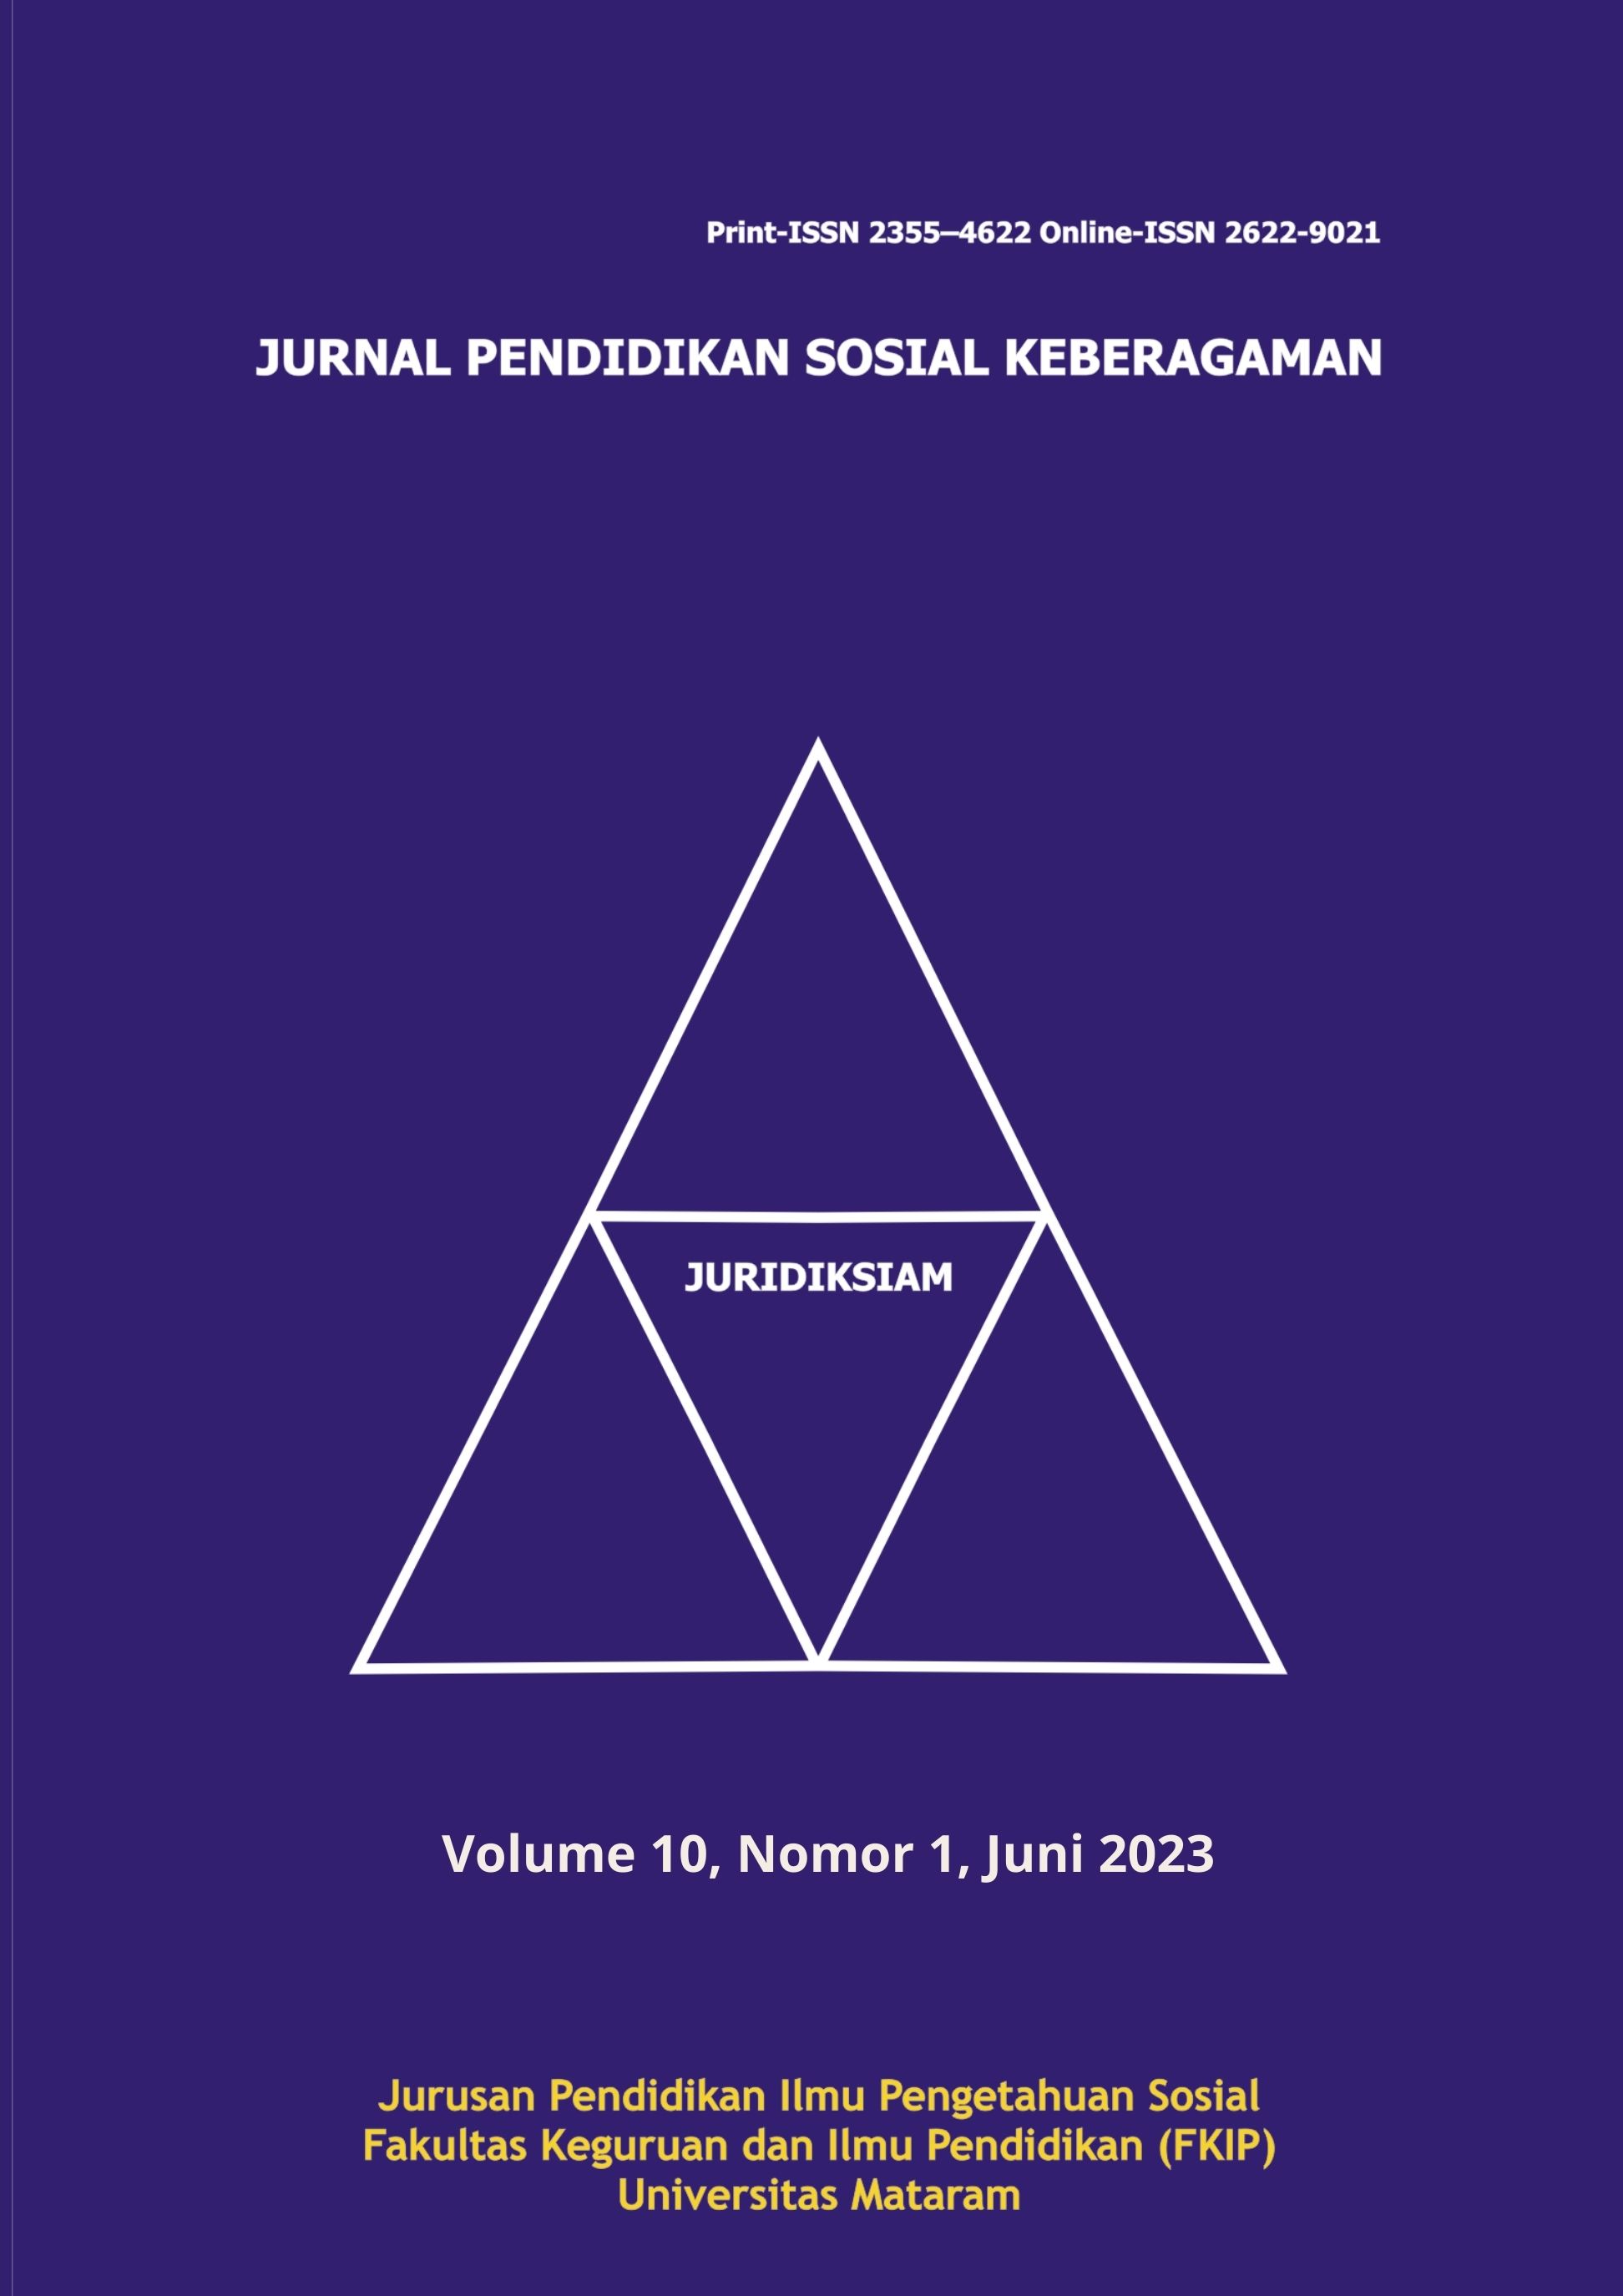 					View Vol. 10 No. 1 (2023): JURIDIKSIAM: JURNAL PENDIDIKAN SOSIAL KEBERAGAMAN
				